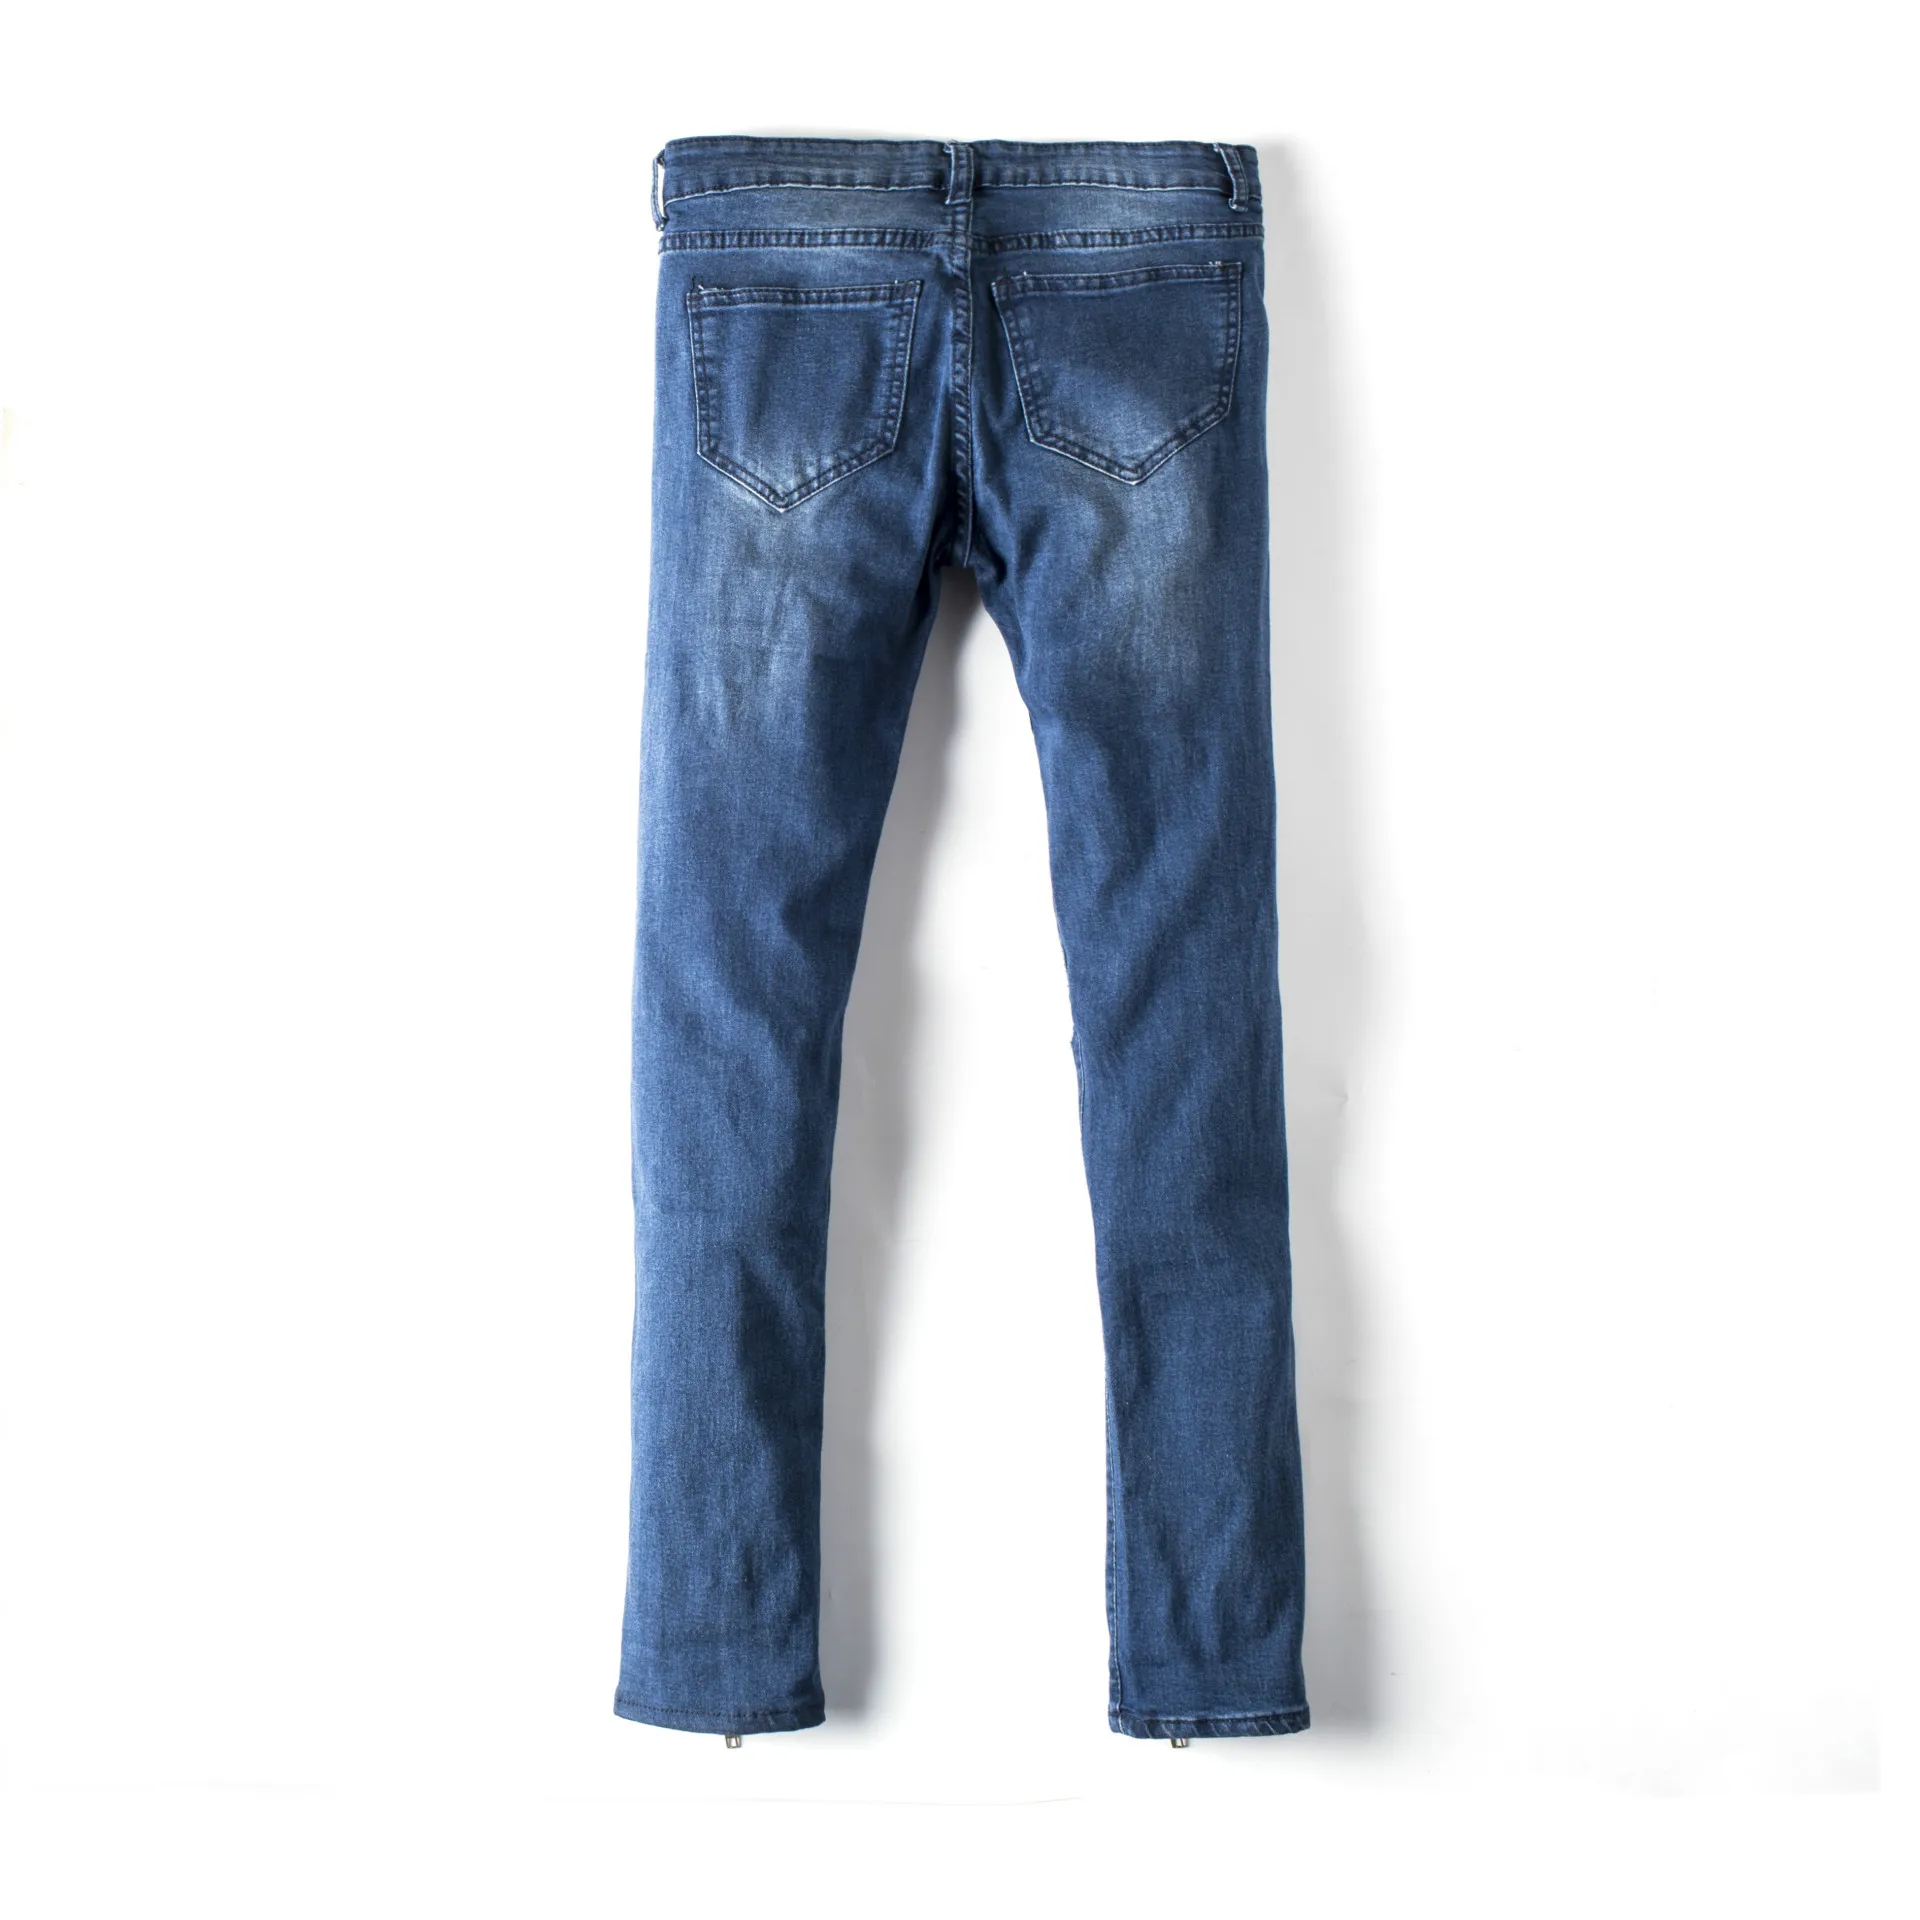 Новый стиль внешней торговли джинсы Для мужчин, в европейском и американском стиле Для мужчин джинсы серо-черный Slim Fit с отверстиями Для